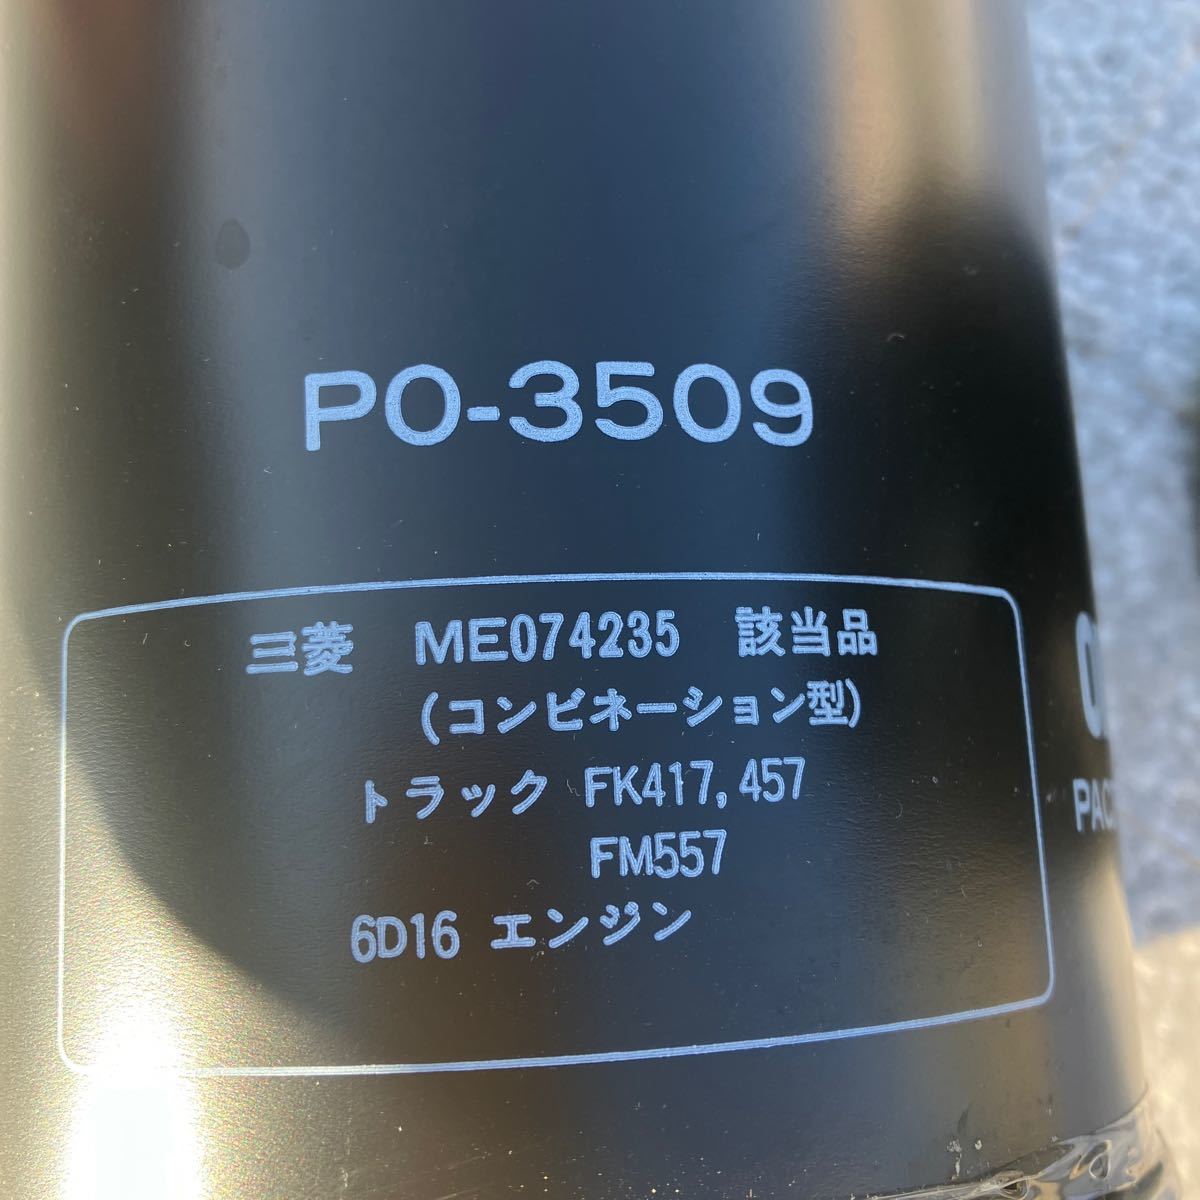  Mitsubishi Fighter oil filter oil element 6D16 original after market goods 2 piece set 